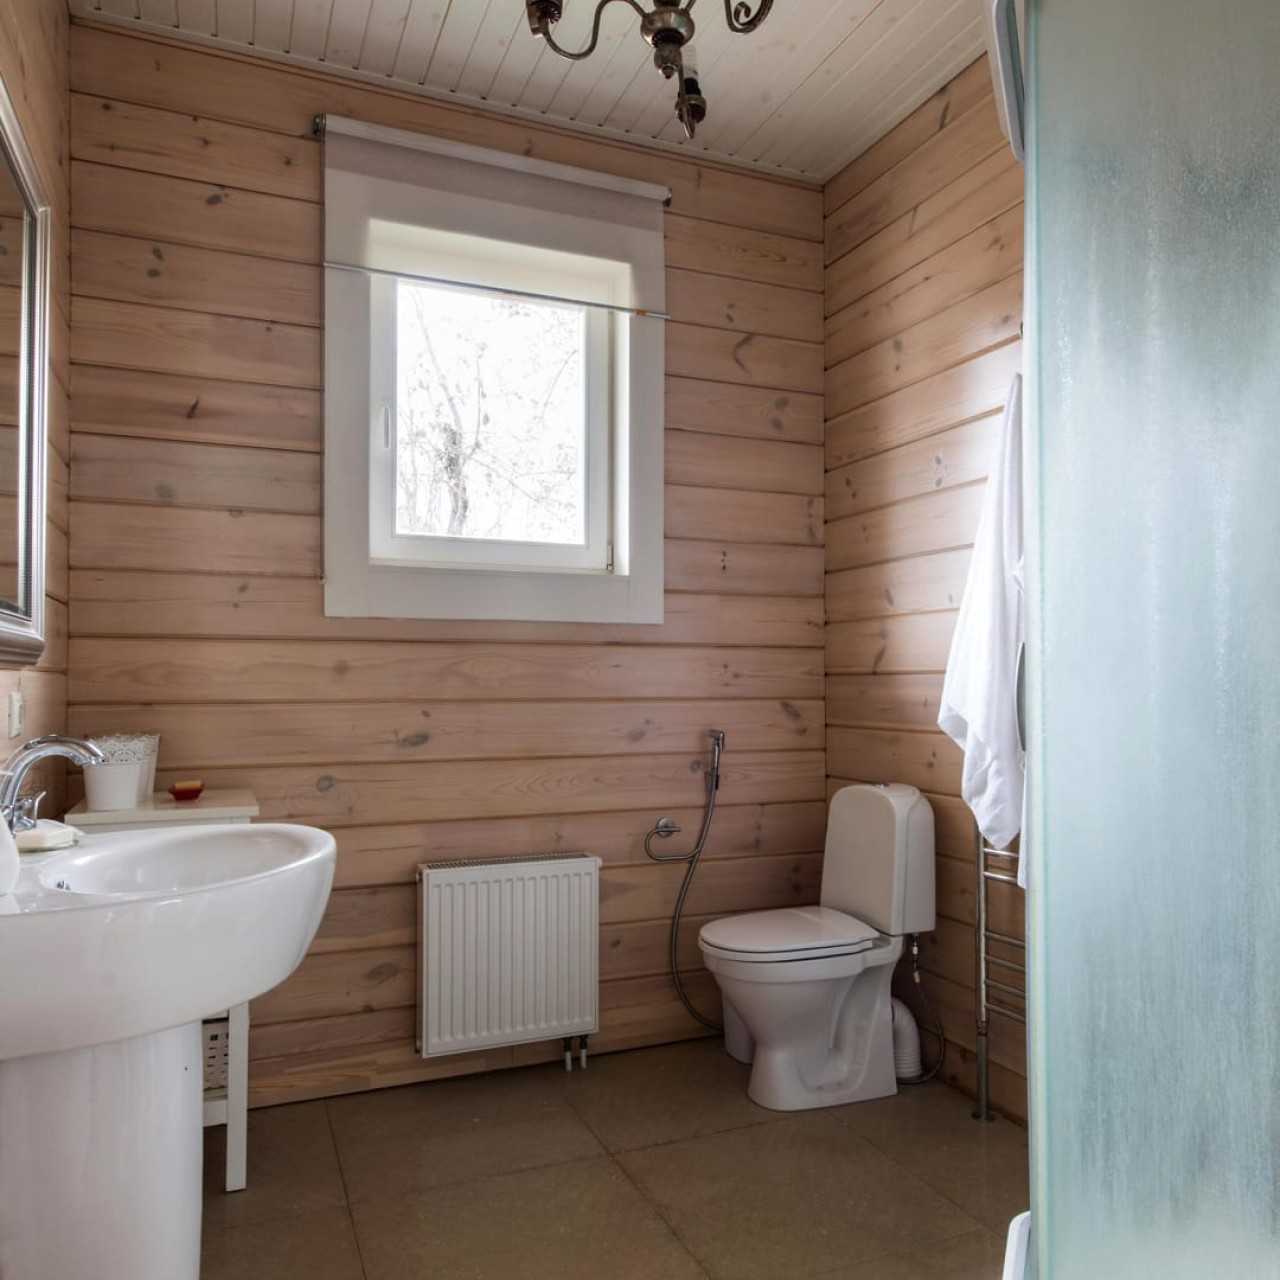 Ванная комната в деревянном доме фото интерьера красивой отделки в доме из бруса Выбор стиля интерьера ванной комнаты Какие материалы подойдут для отделки стен, потолка и пола для ванной в доме из дерева